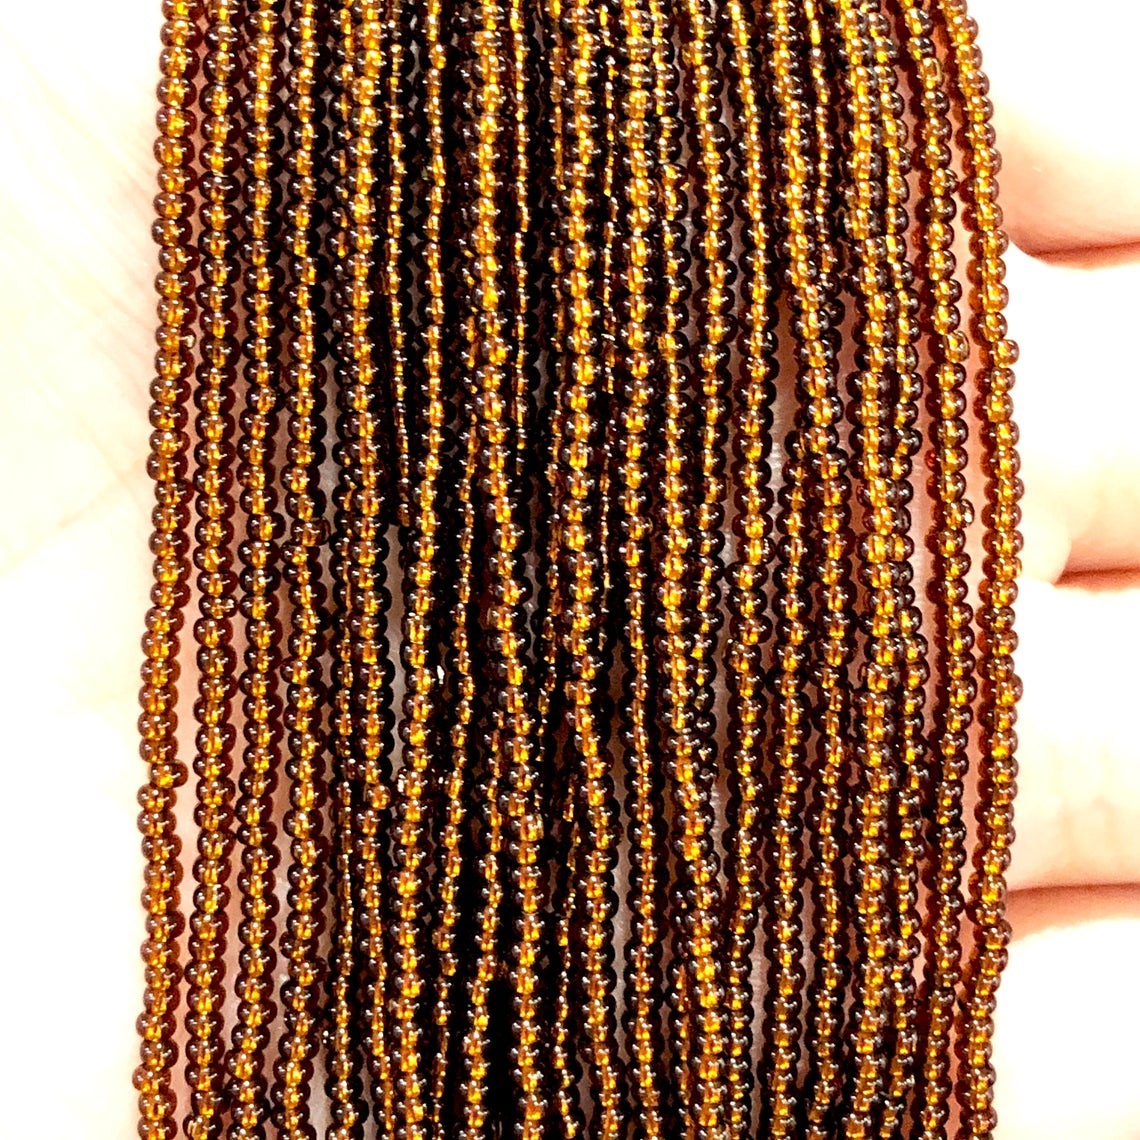 Sand Beads, PRECIOSA -17110- Silver Lined Dark Topaz 